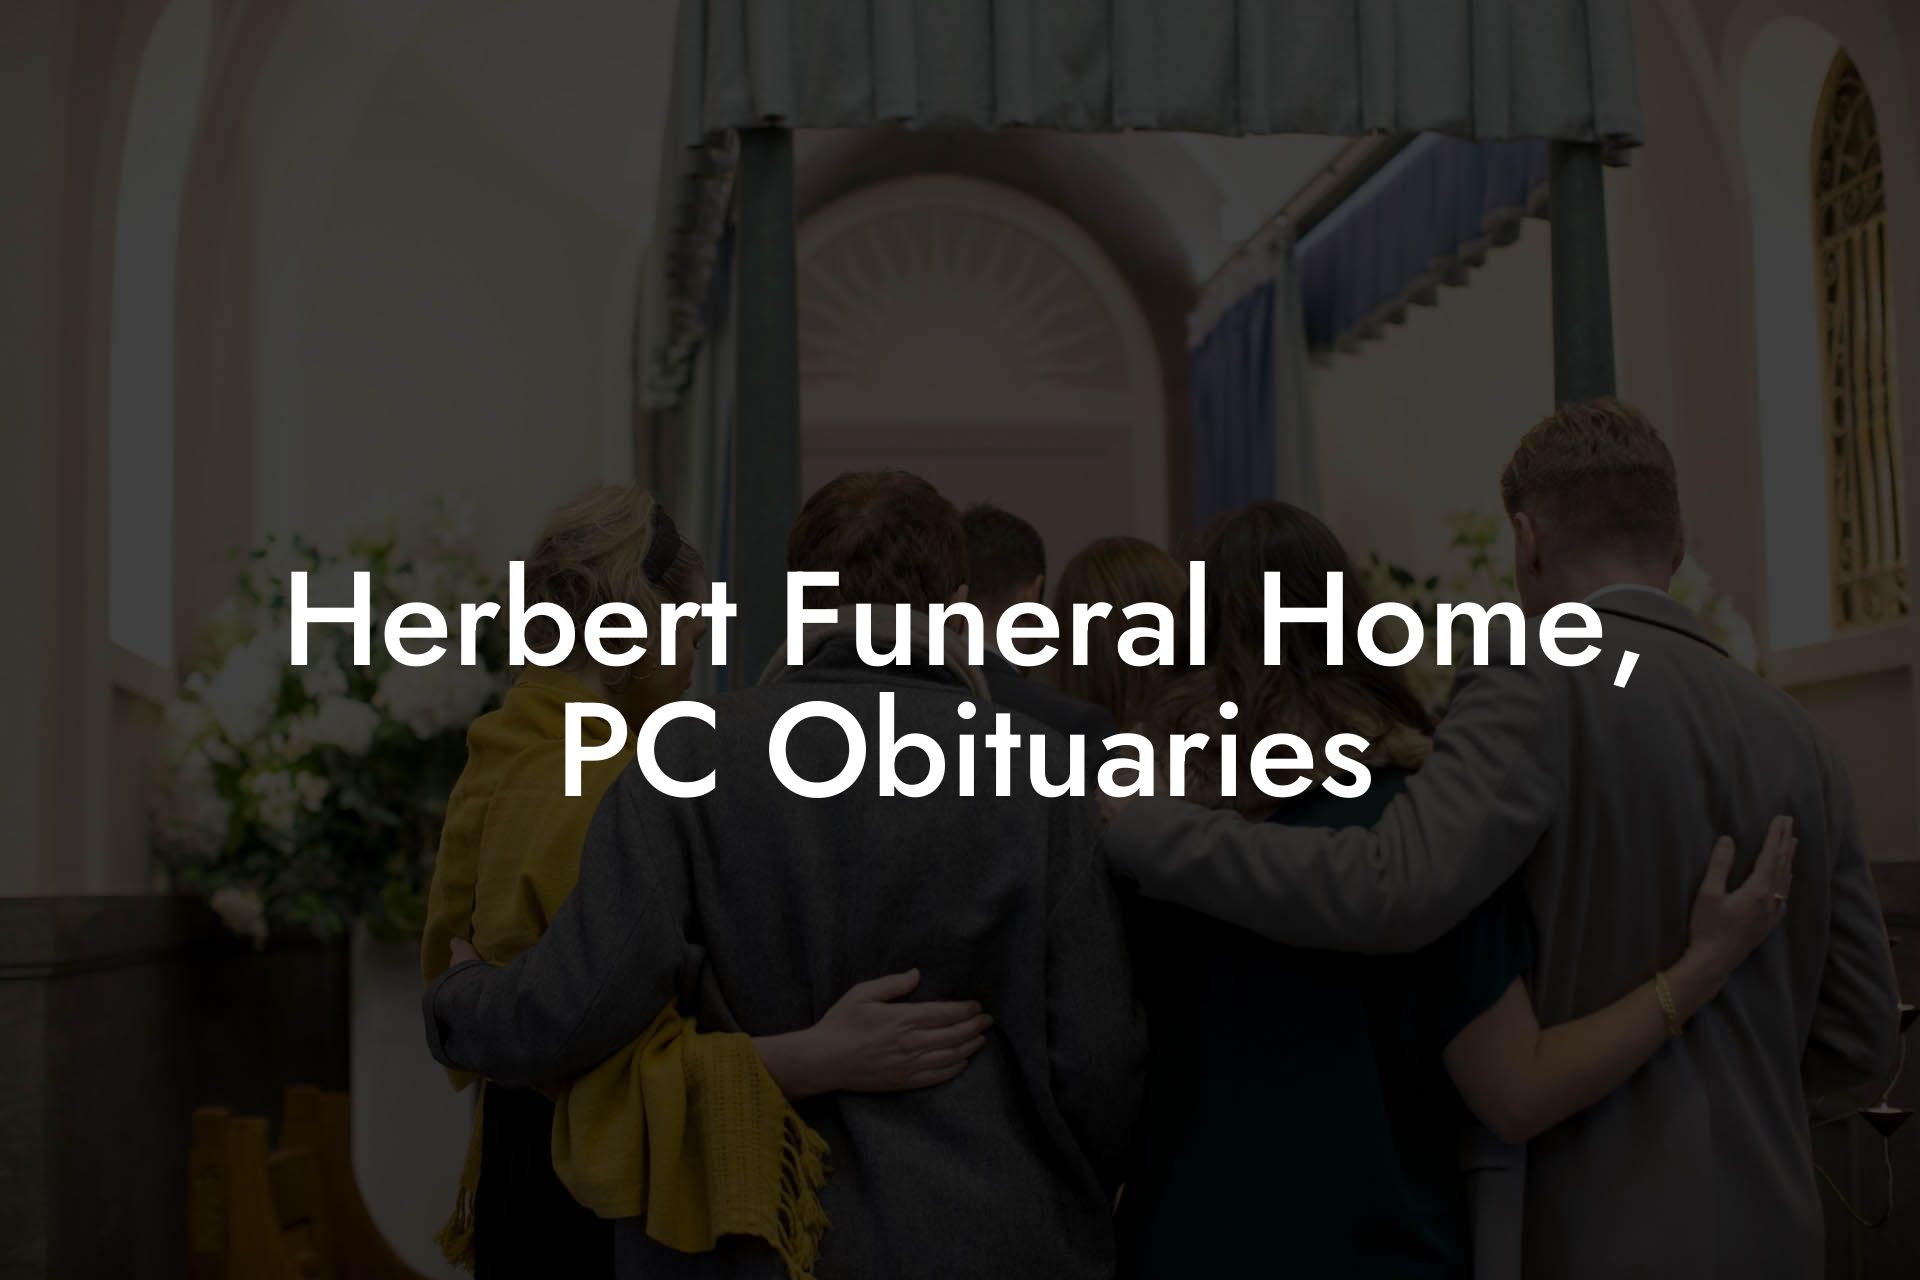 Herbert Funeral Home, PC Obituaries